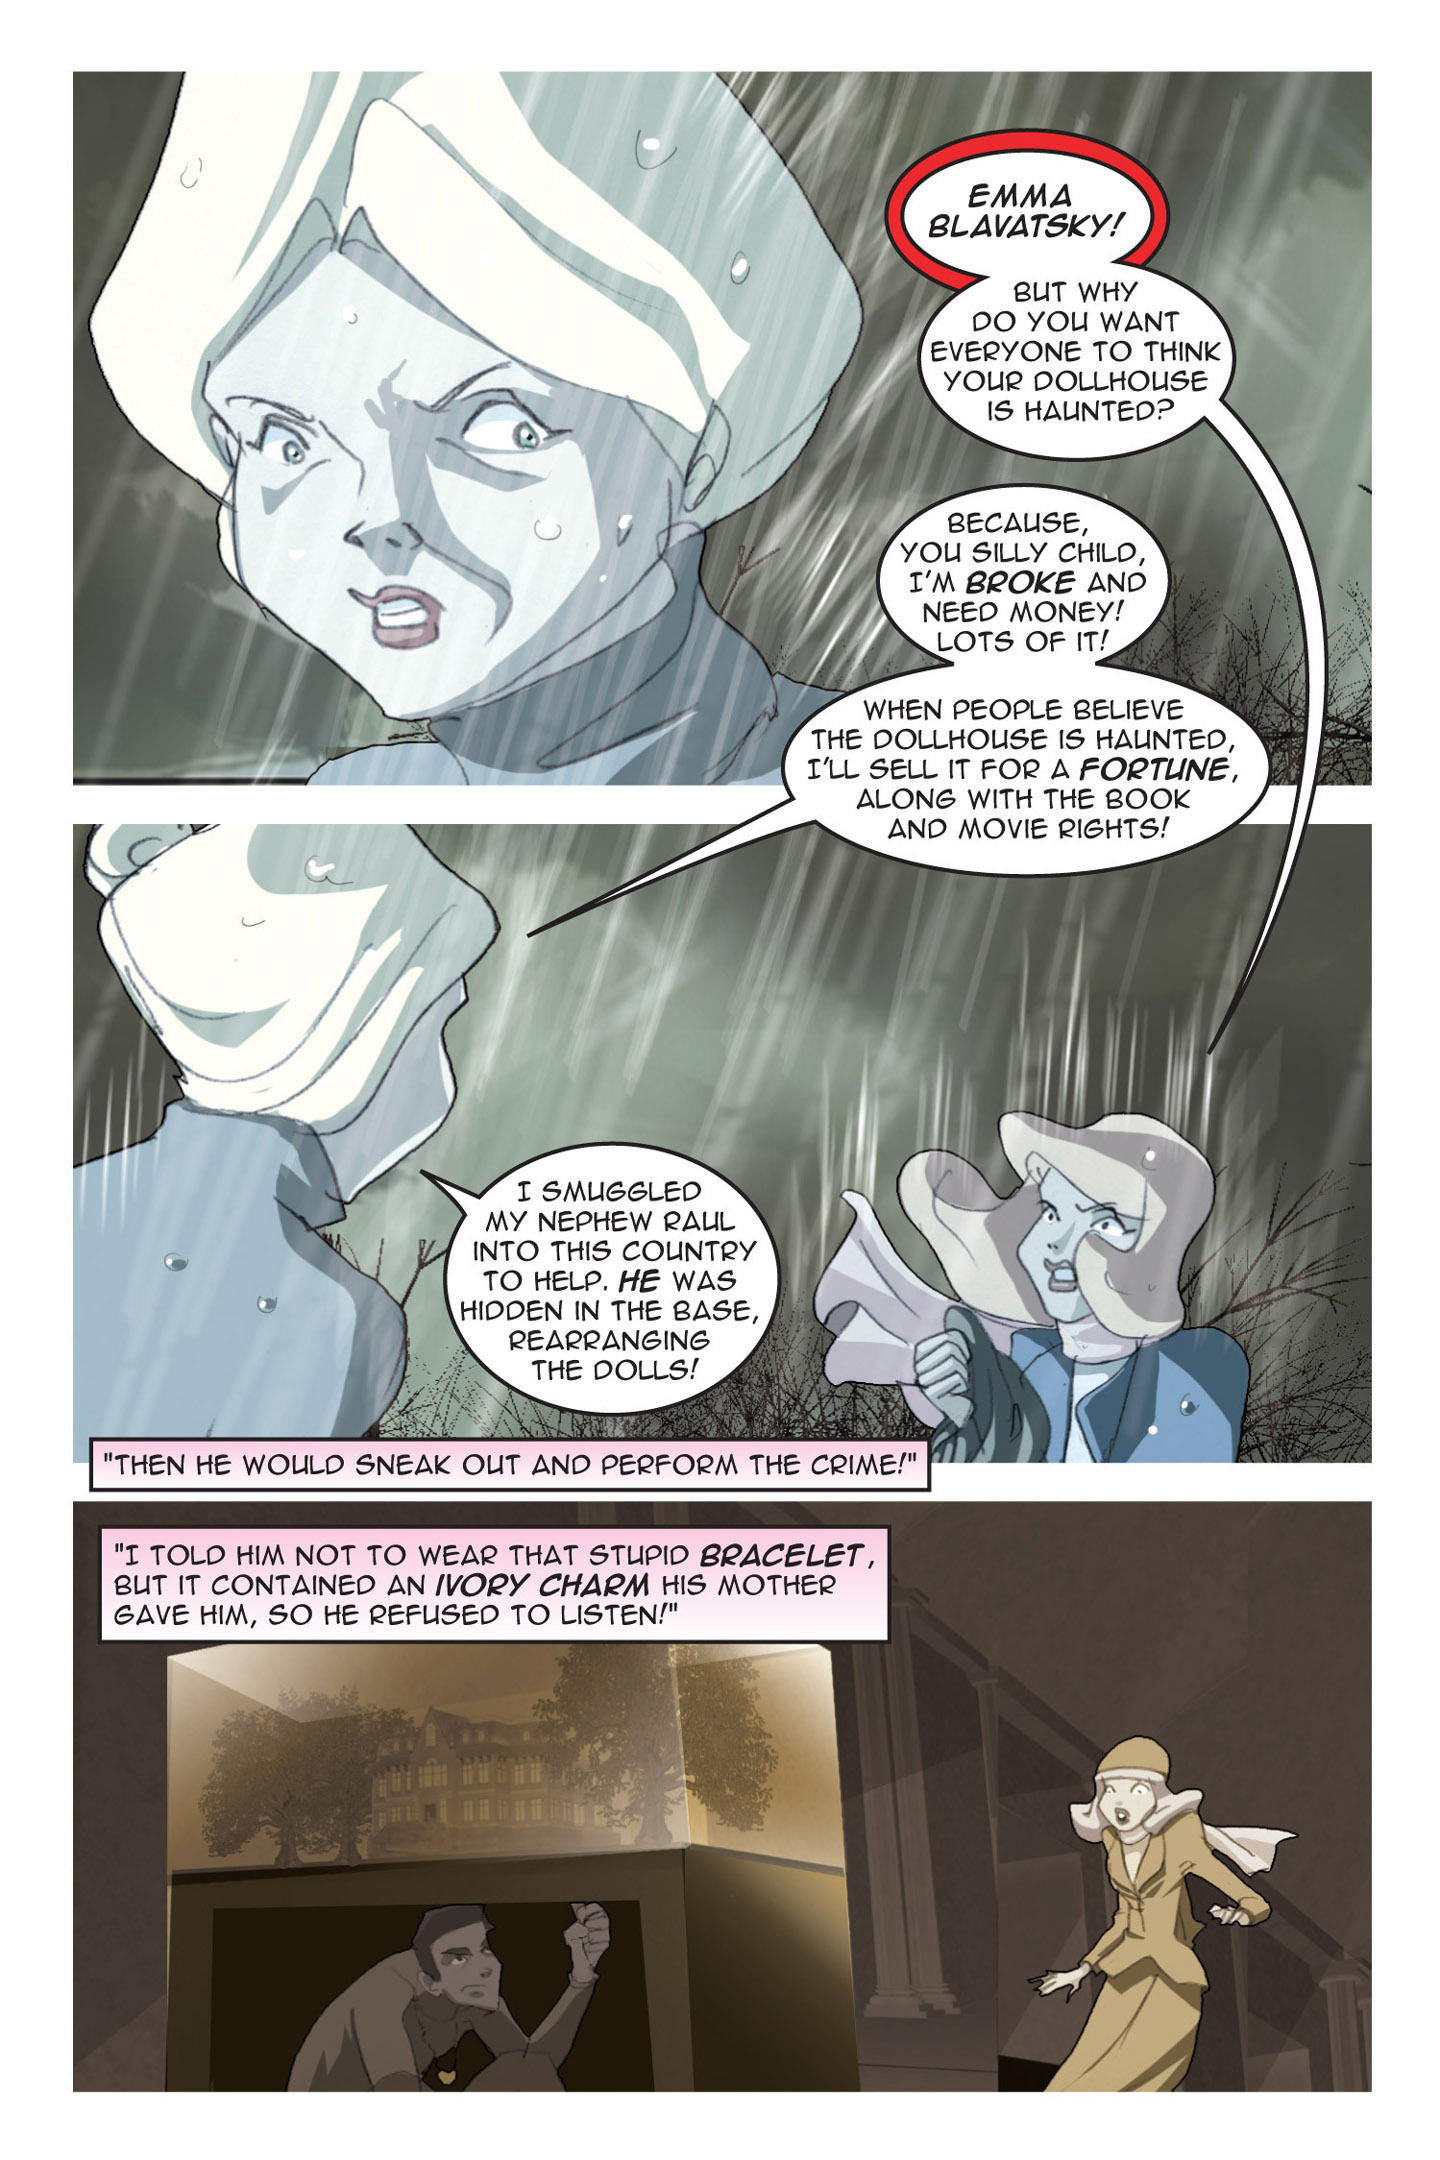 Read online Nancy Drew comic -  Issue #3 - 81